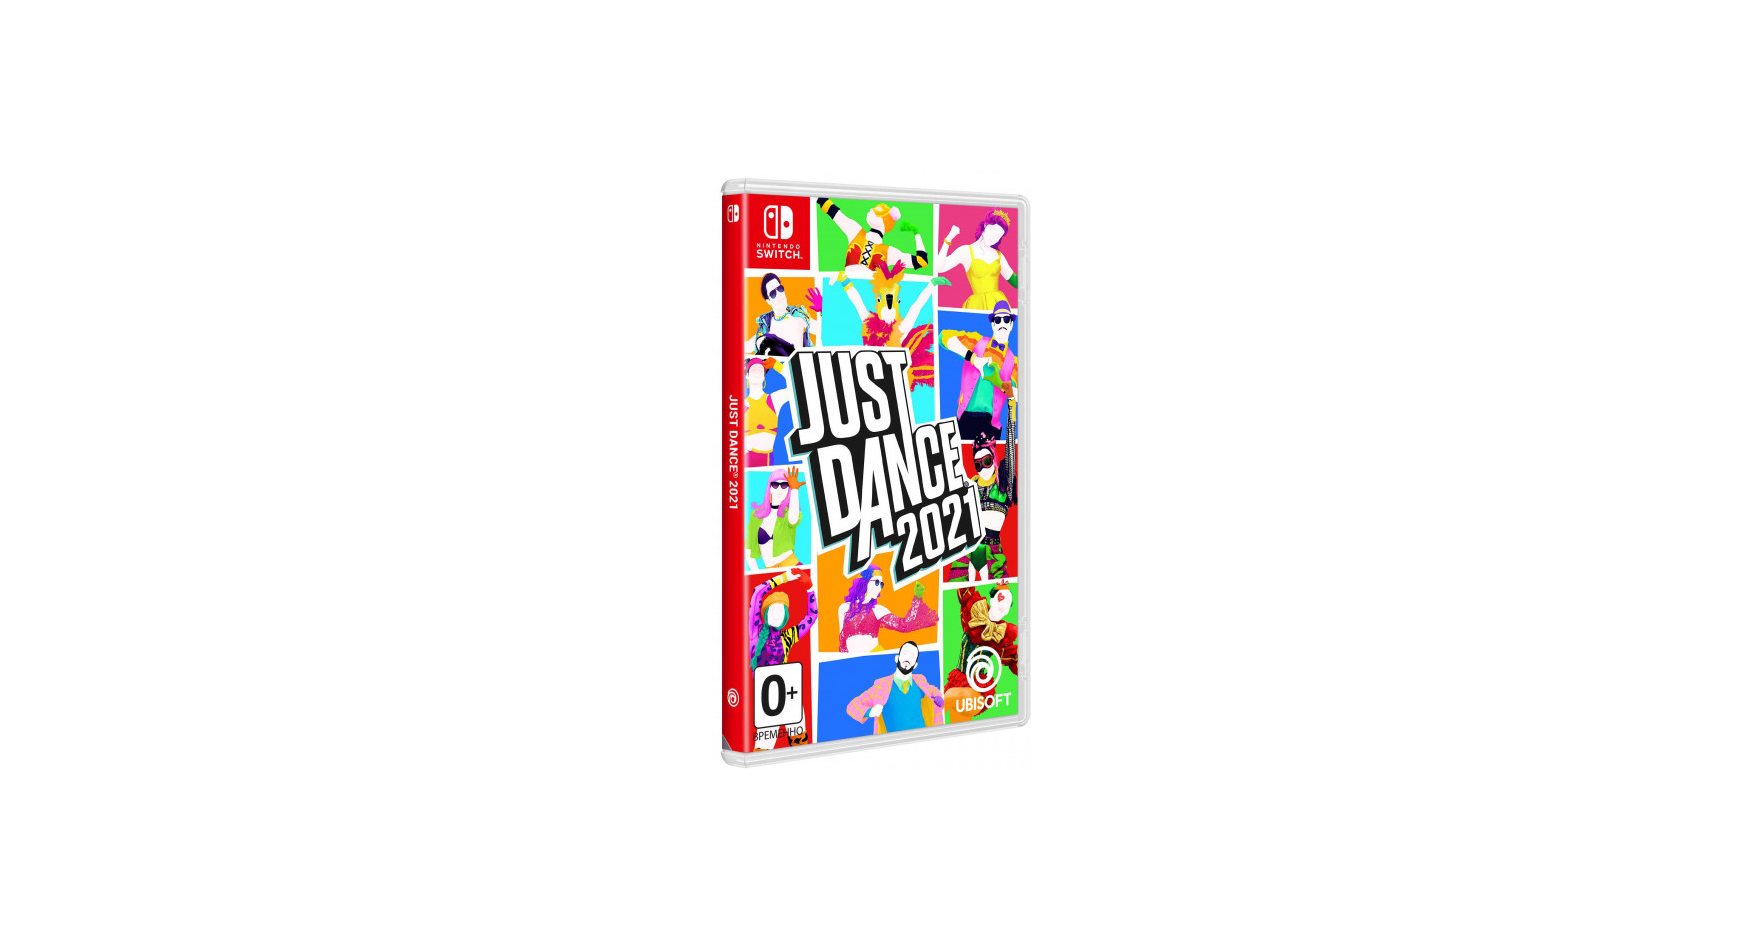 Nintendo Just Dance 2021 Nintendo